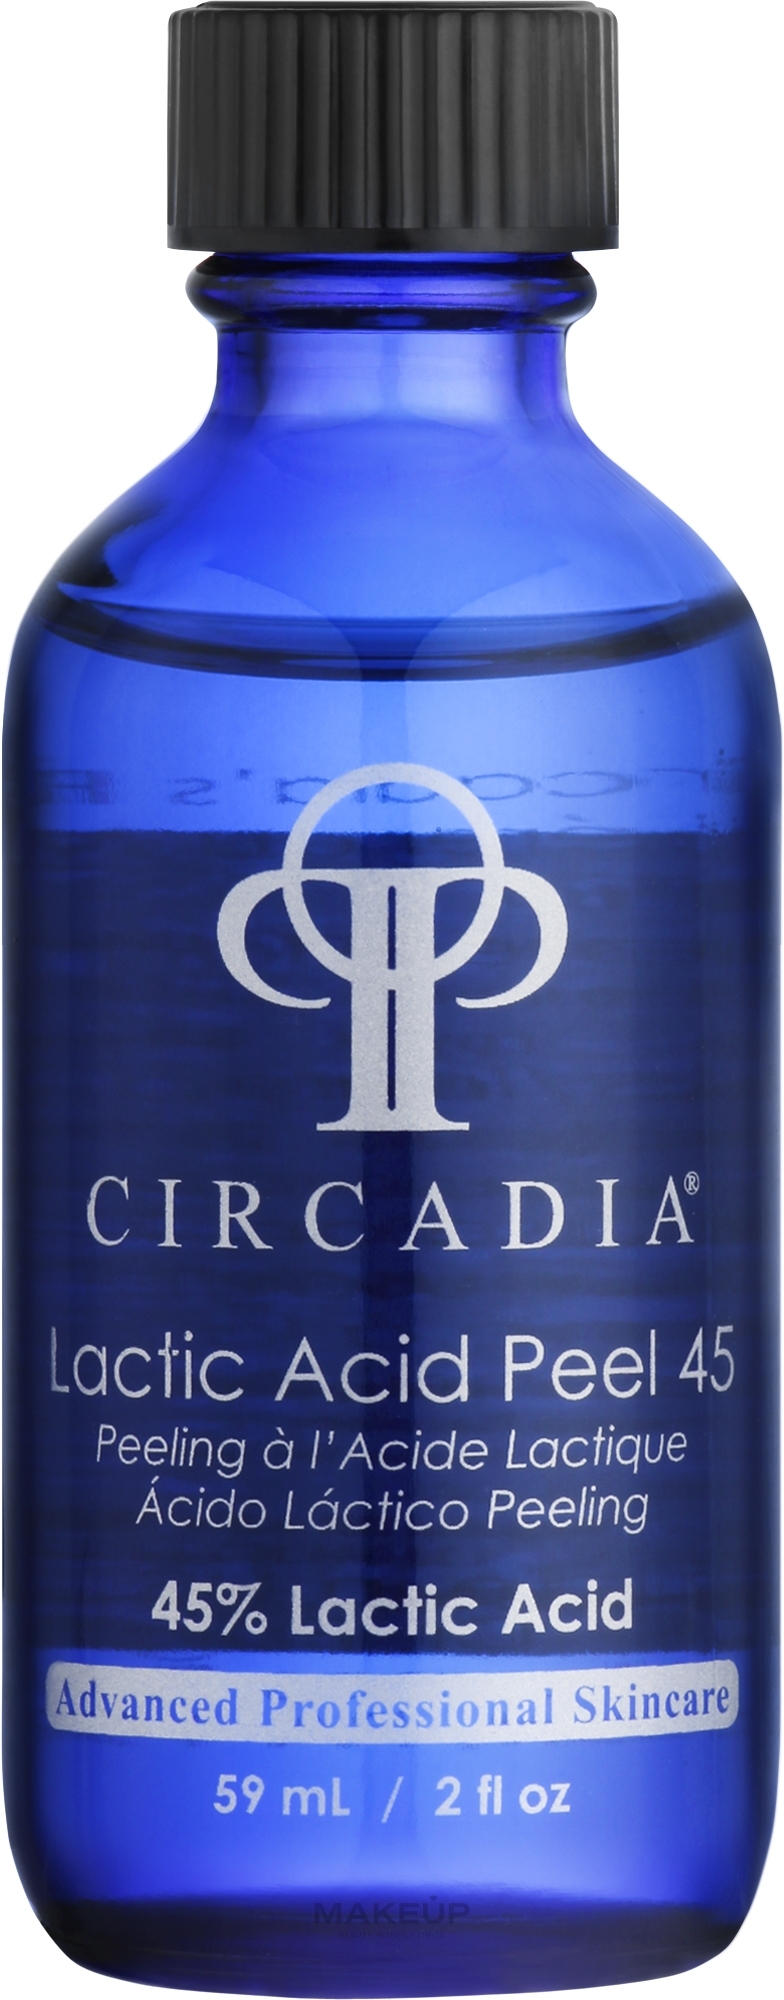 Пілінг для обличчя "Молочна кислота 45%" - Circadia Lactic Acid Peel 45% — фото 59ml